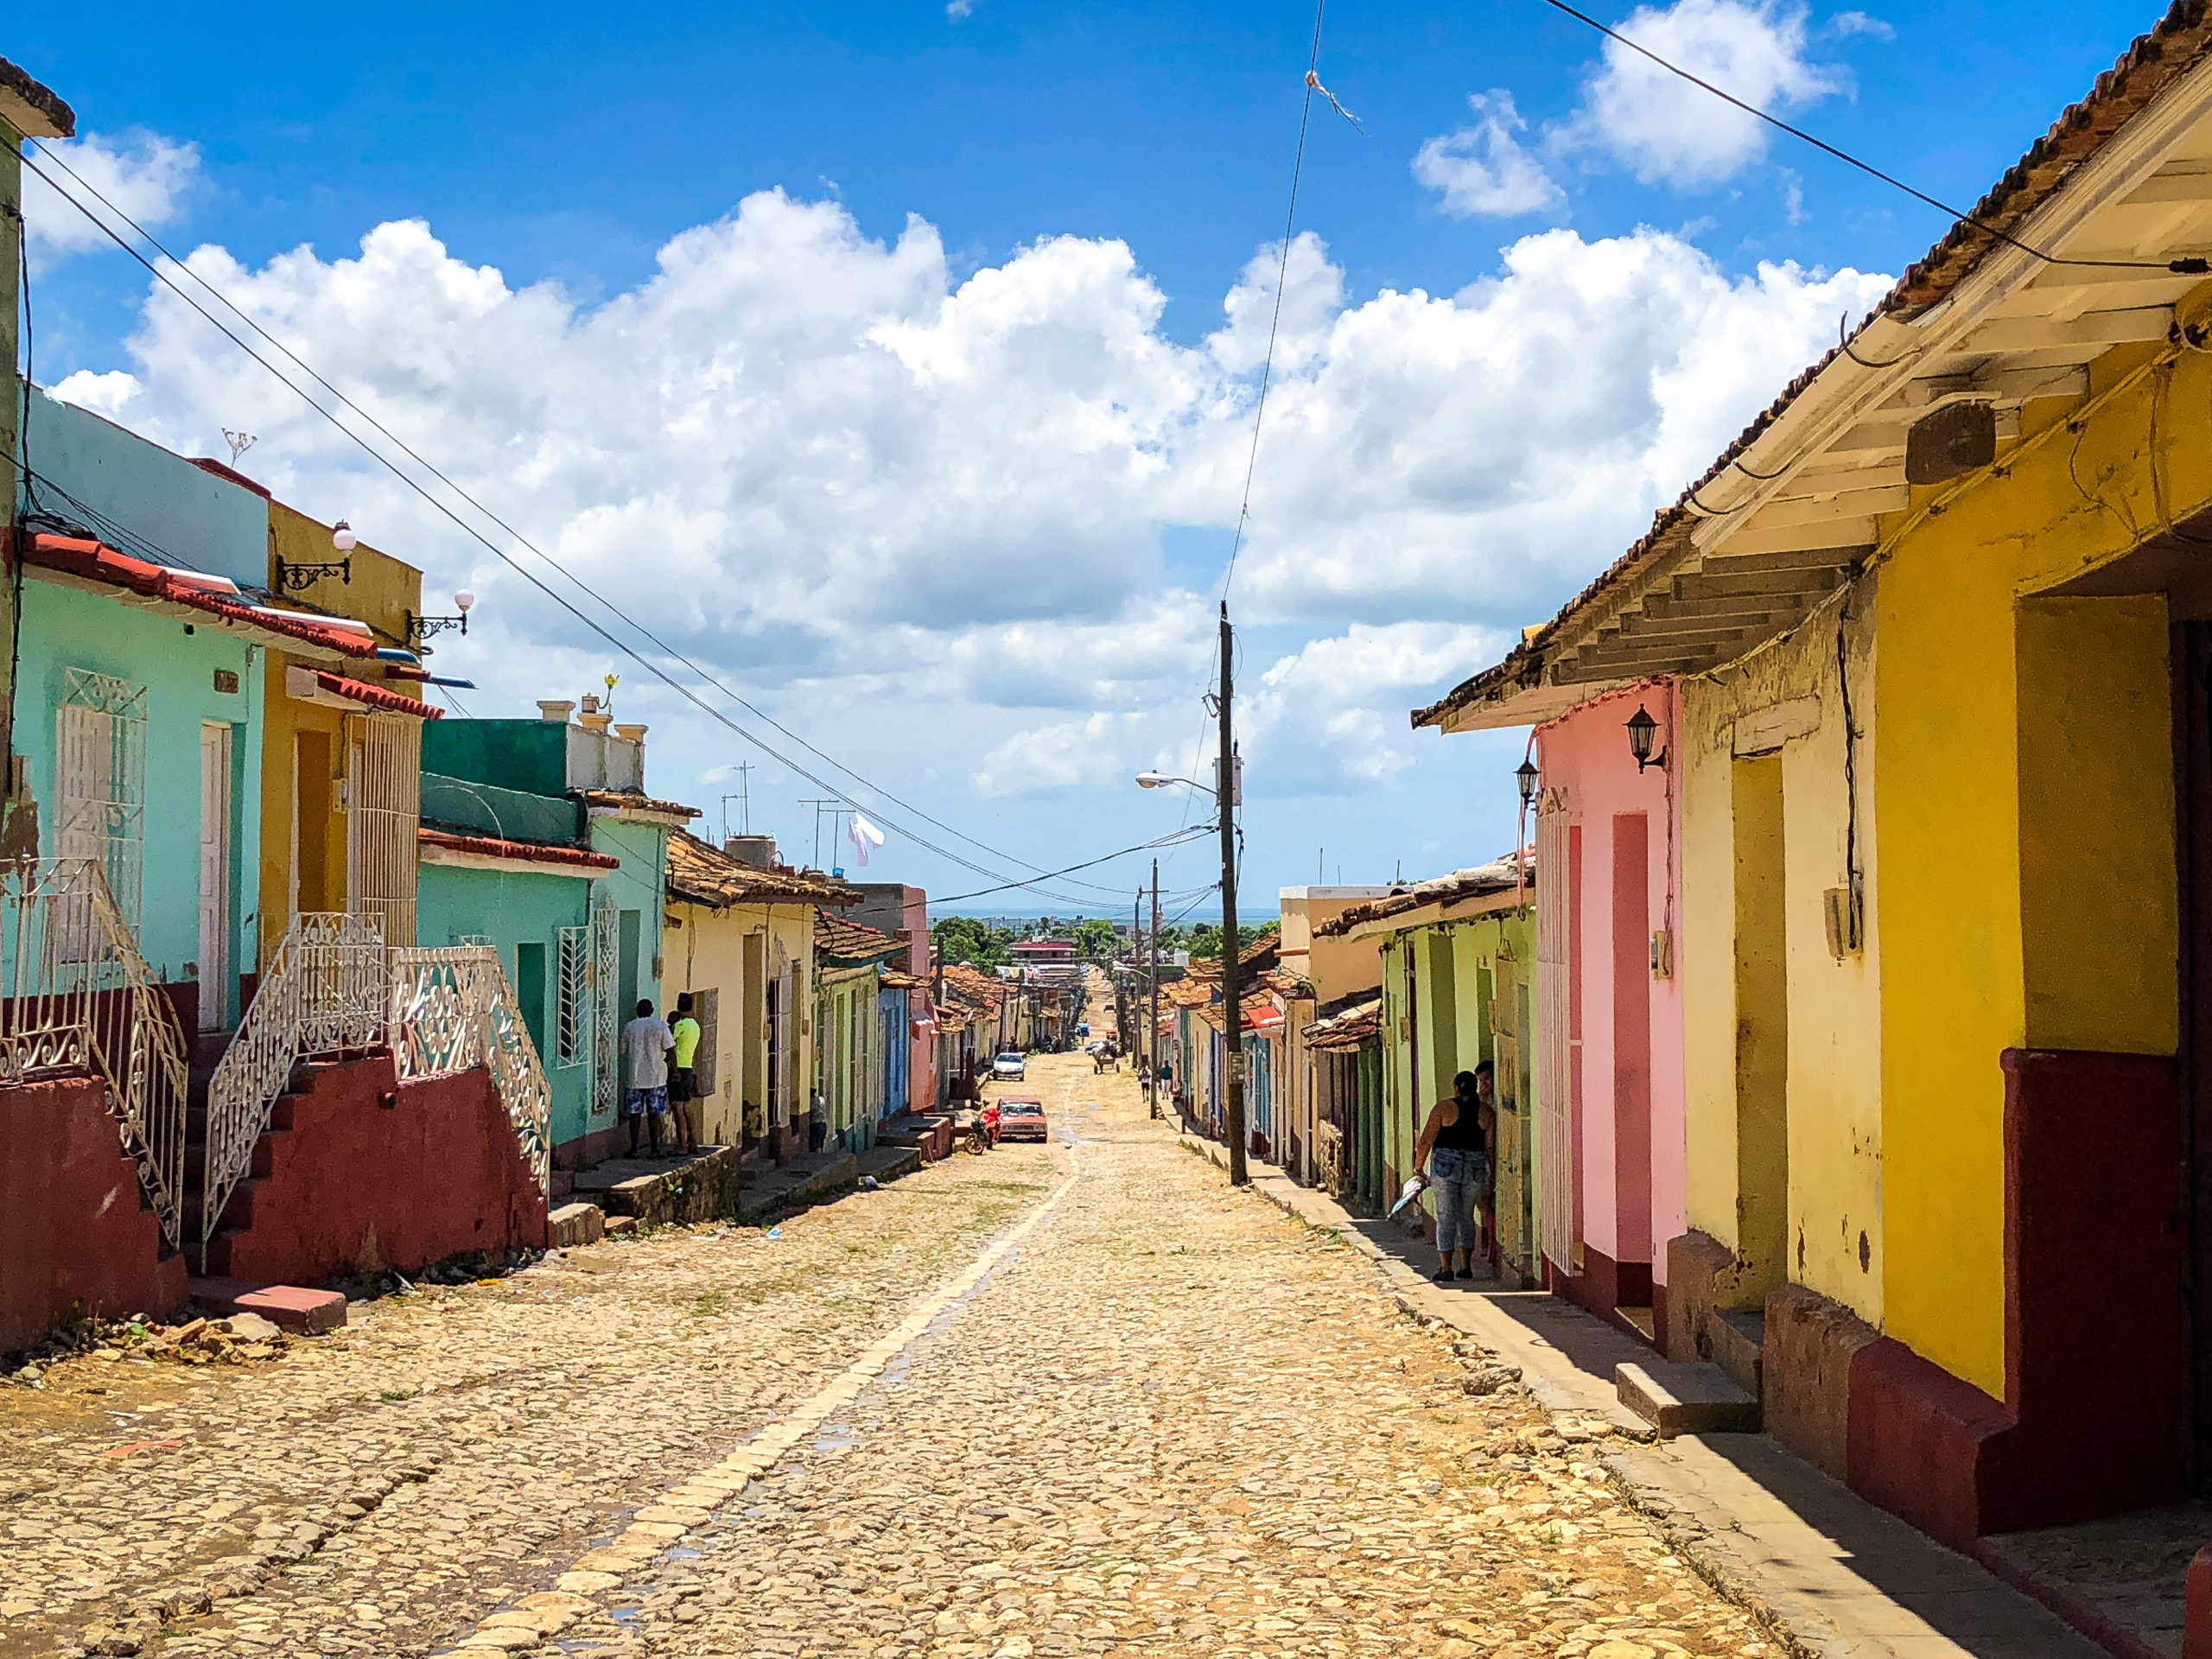 Coloured streets in Trinidad in Cuba